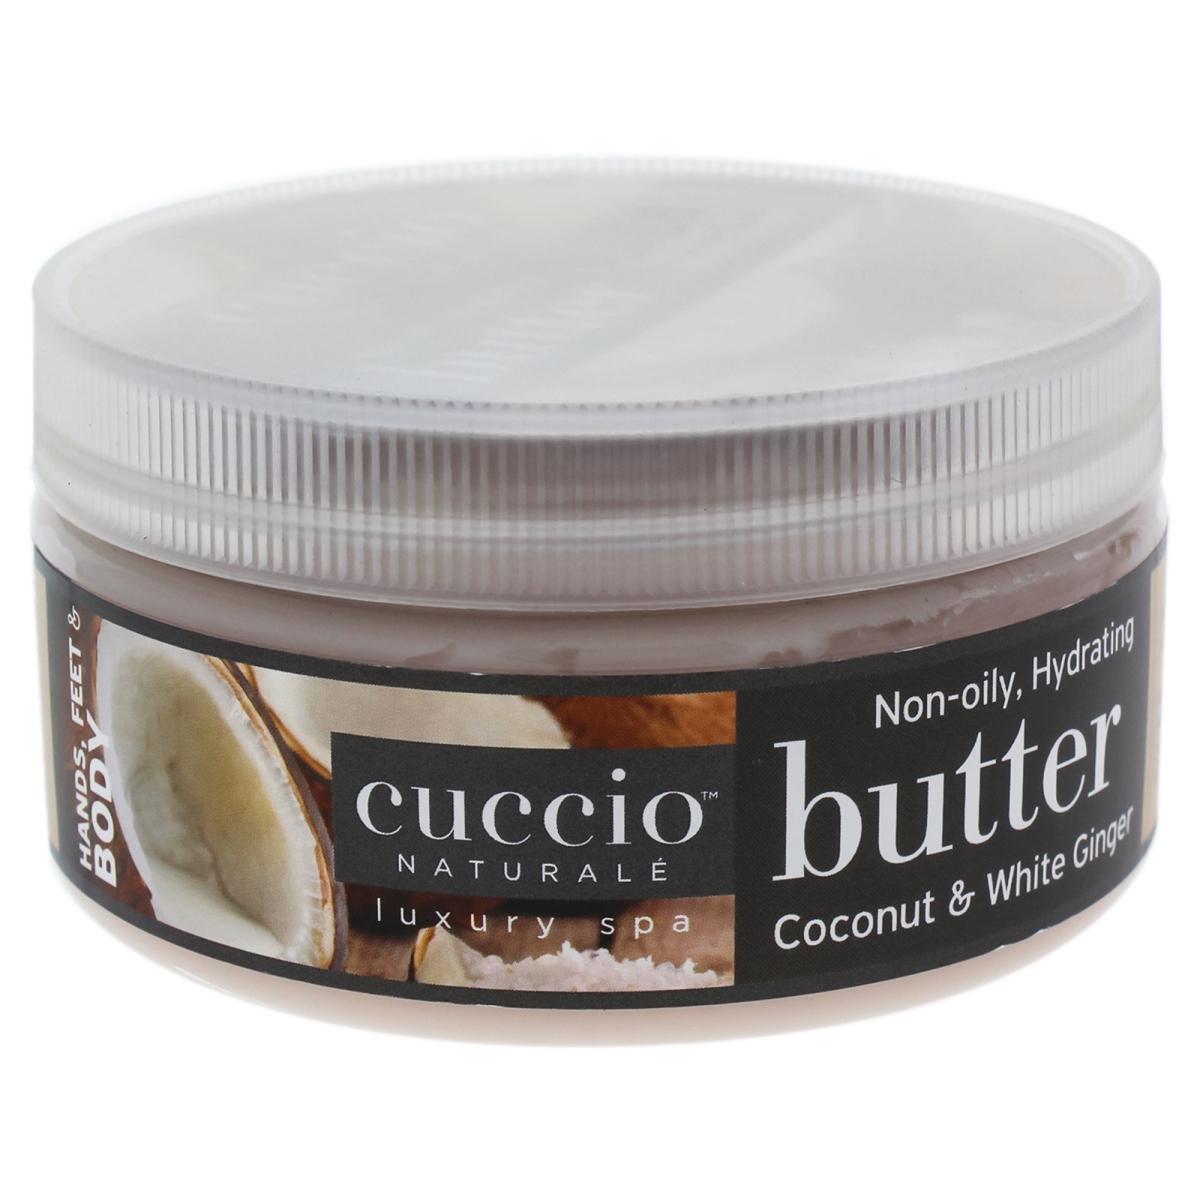 I0090883 Butter Blend Body Lotion For Unisex - Coconut & White Ginger - 8 Oz